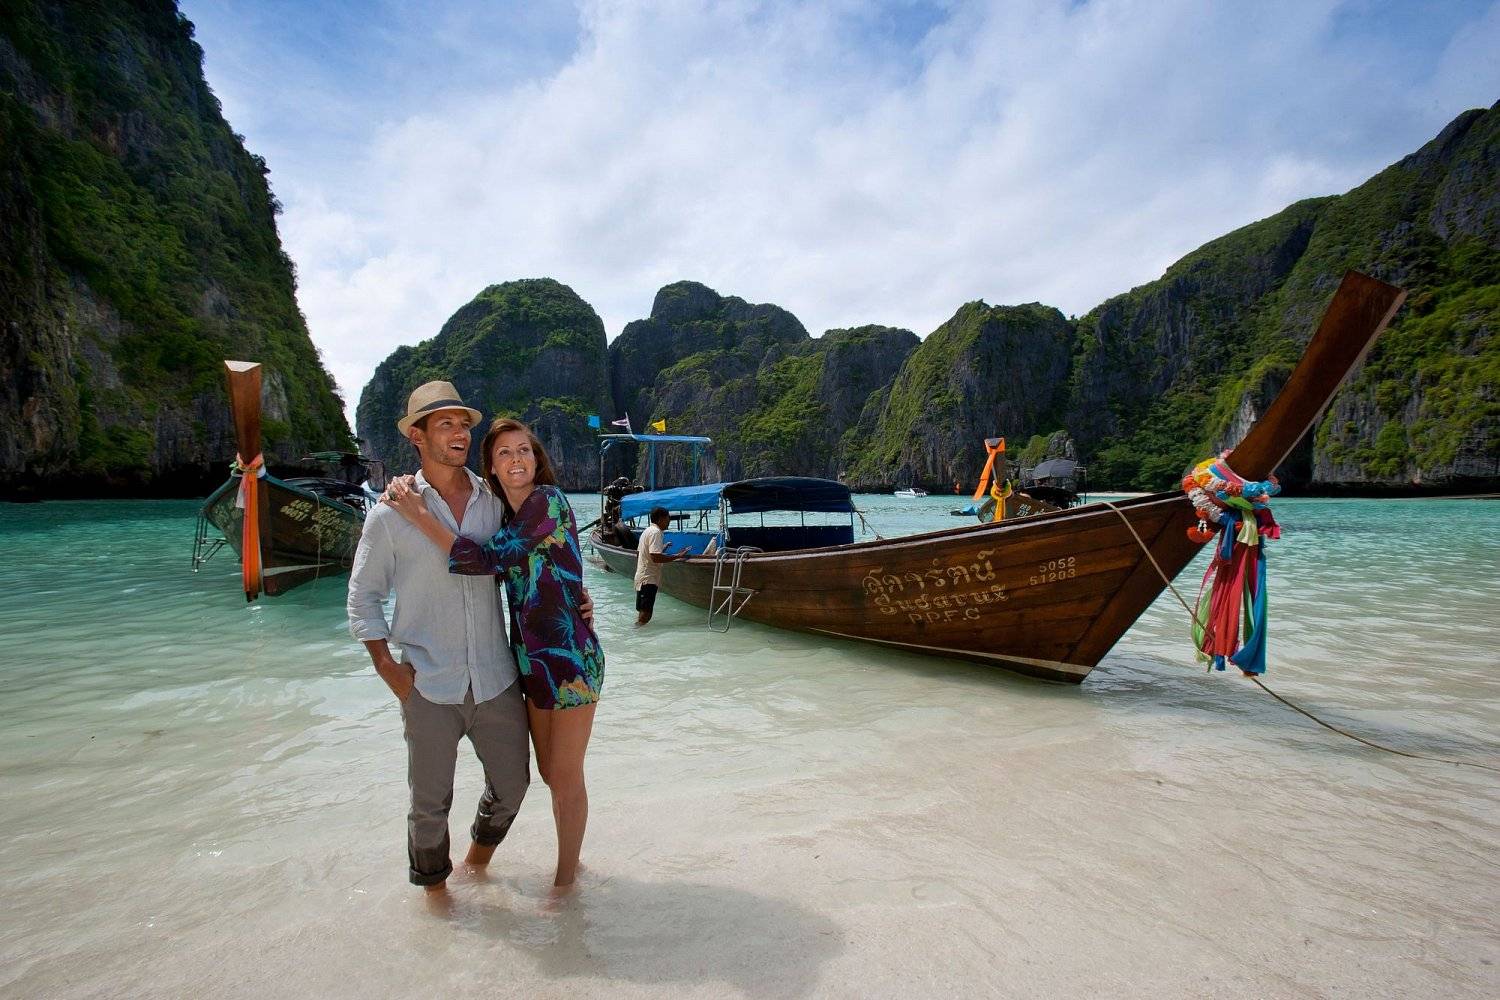 7 самых популярных курортов таиланда